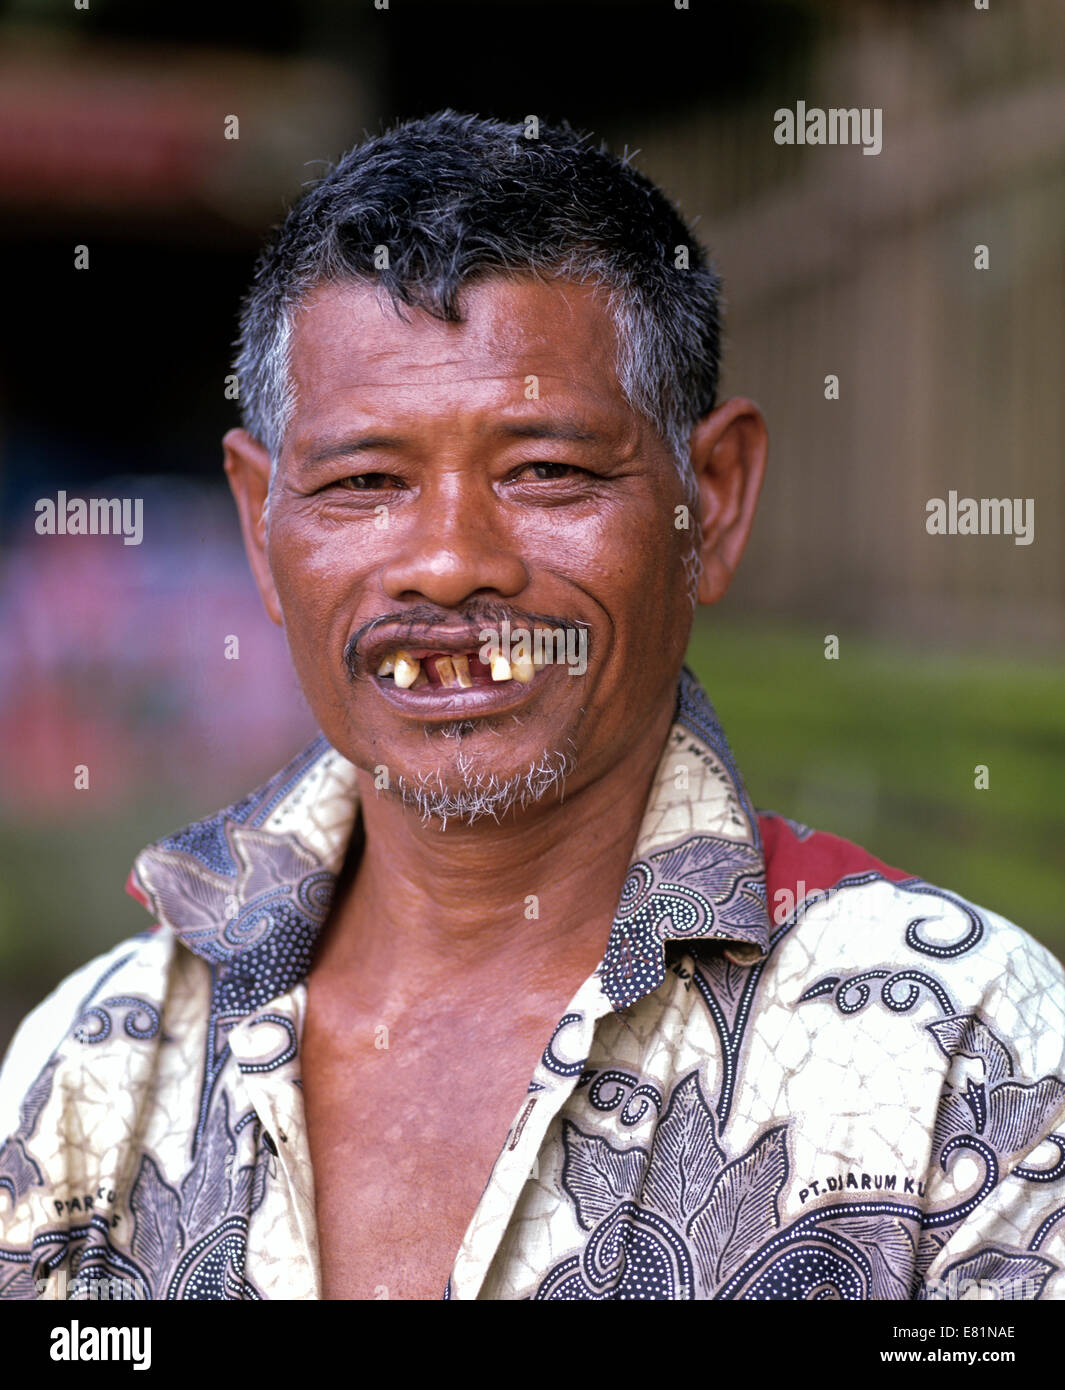 Balinesische Mann lächelnd mit schlechten Zähnen, Zahnverlust, Bali, Indonesien Stockfoto